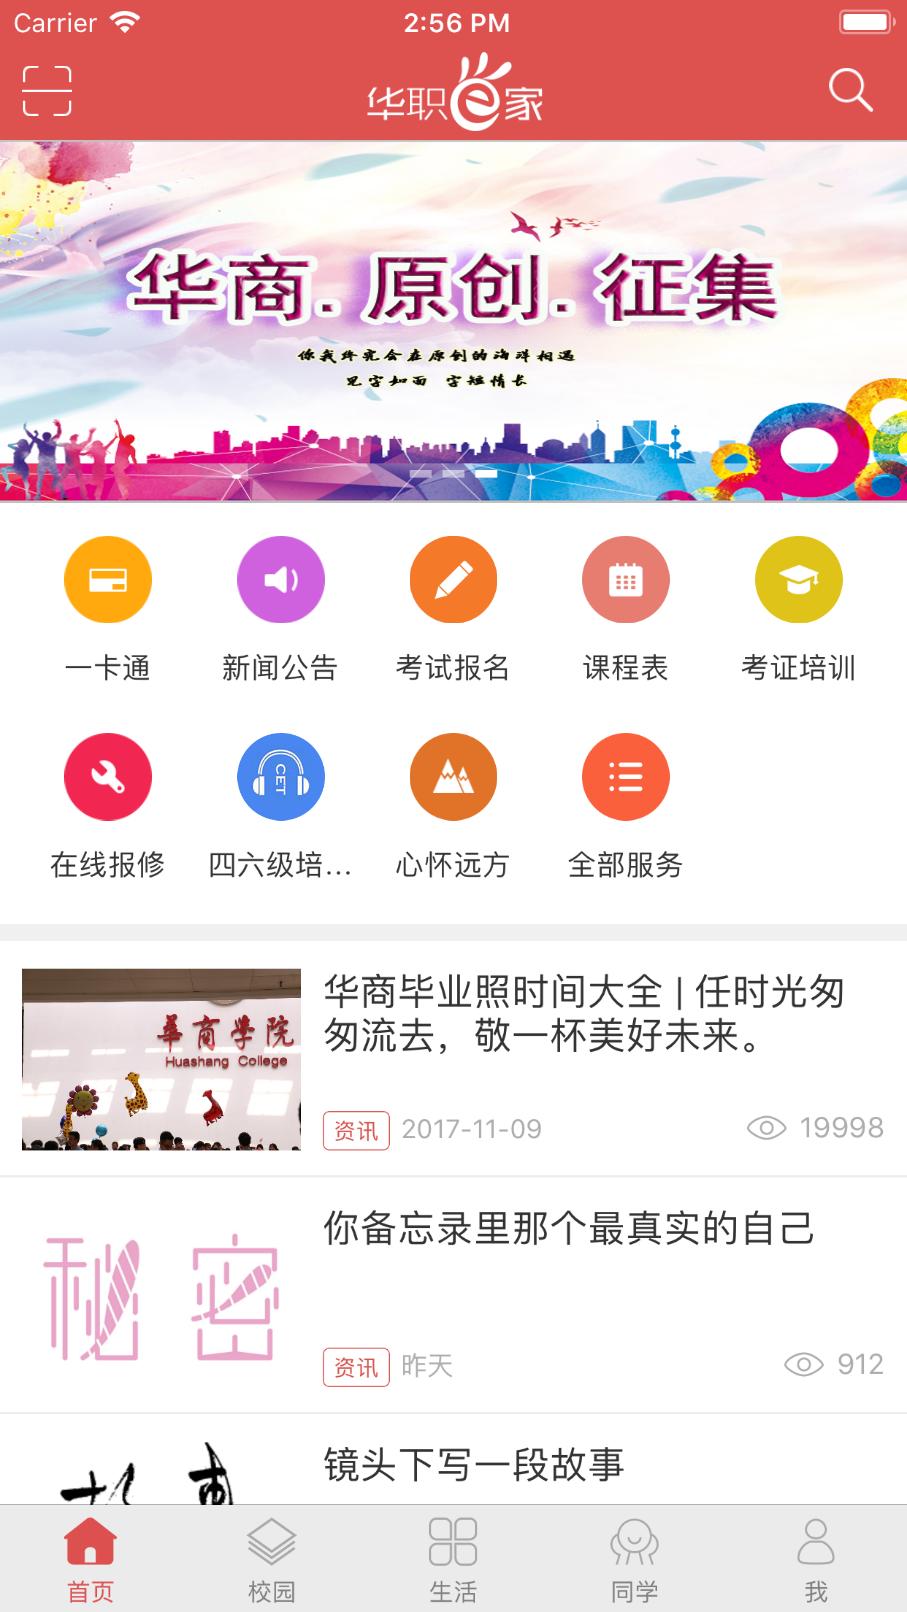 华商e家app最新版本